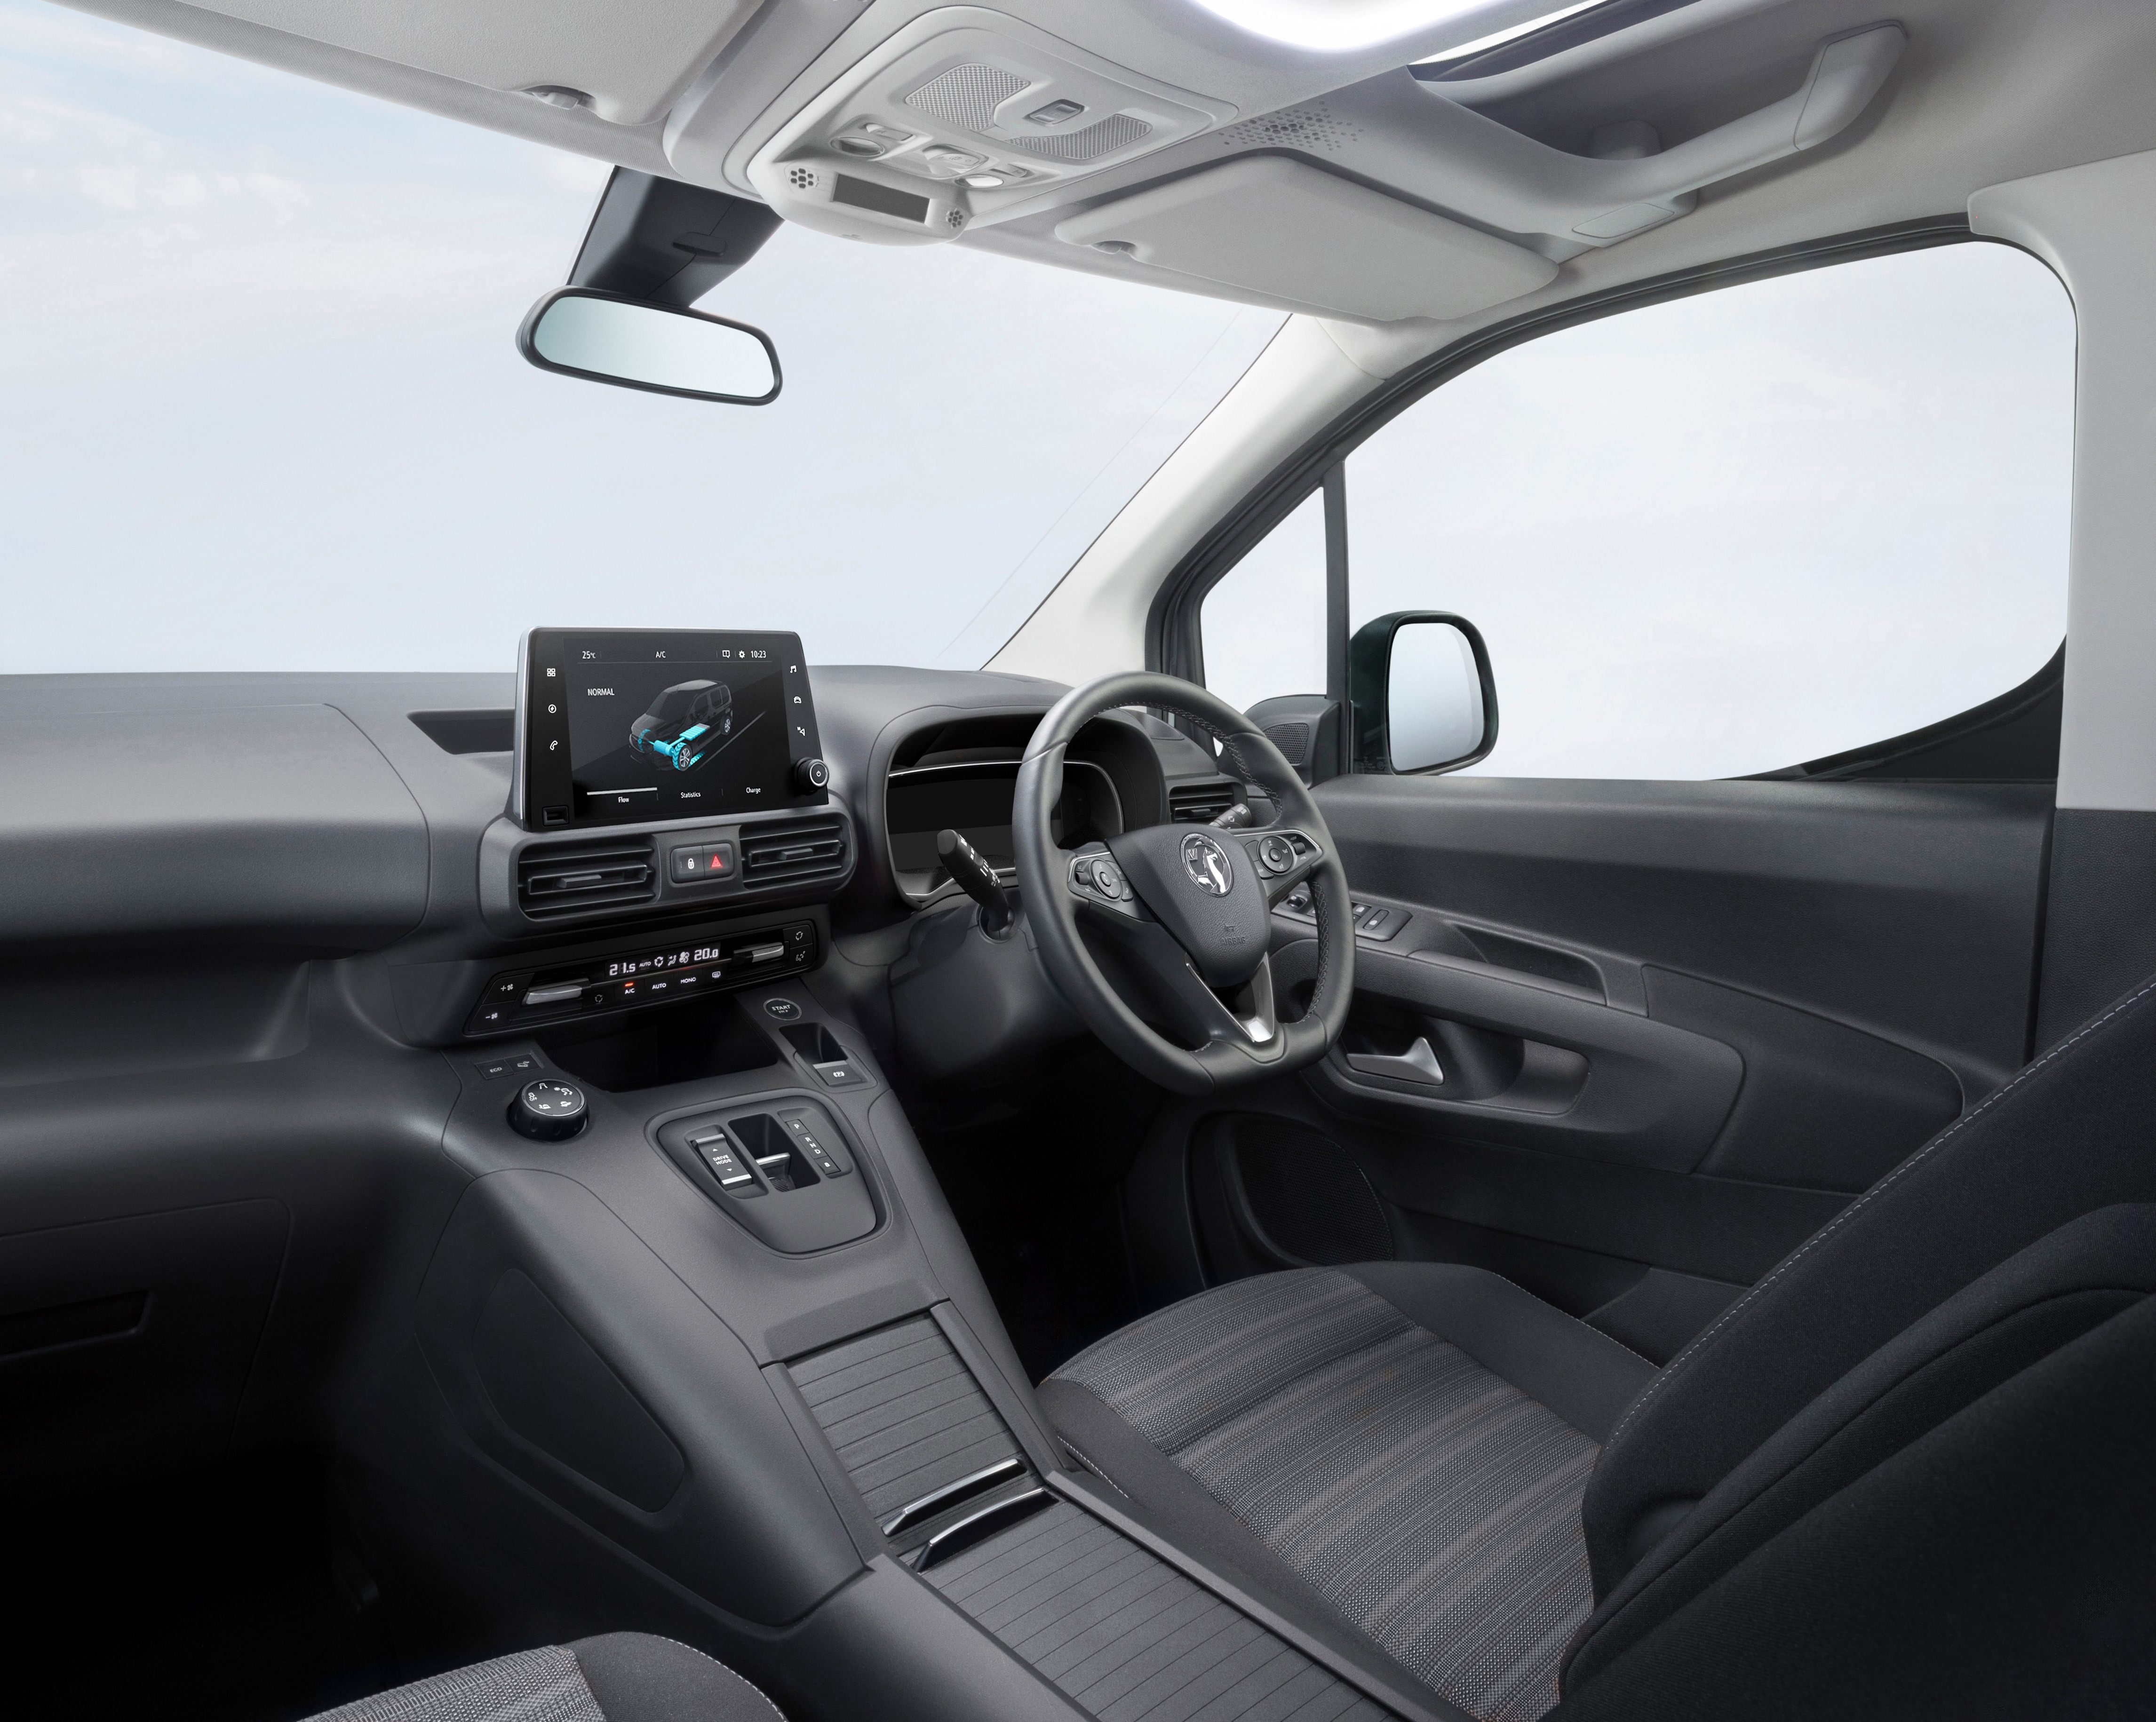 Vauxhall Combo e-Life interior